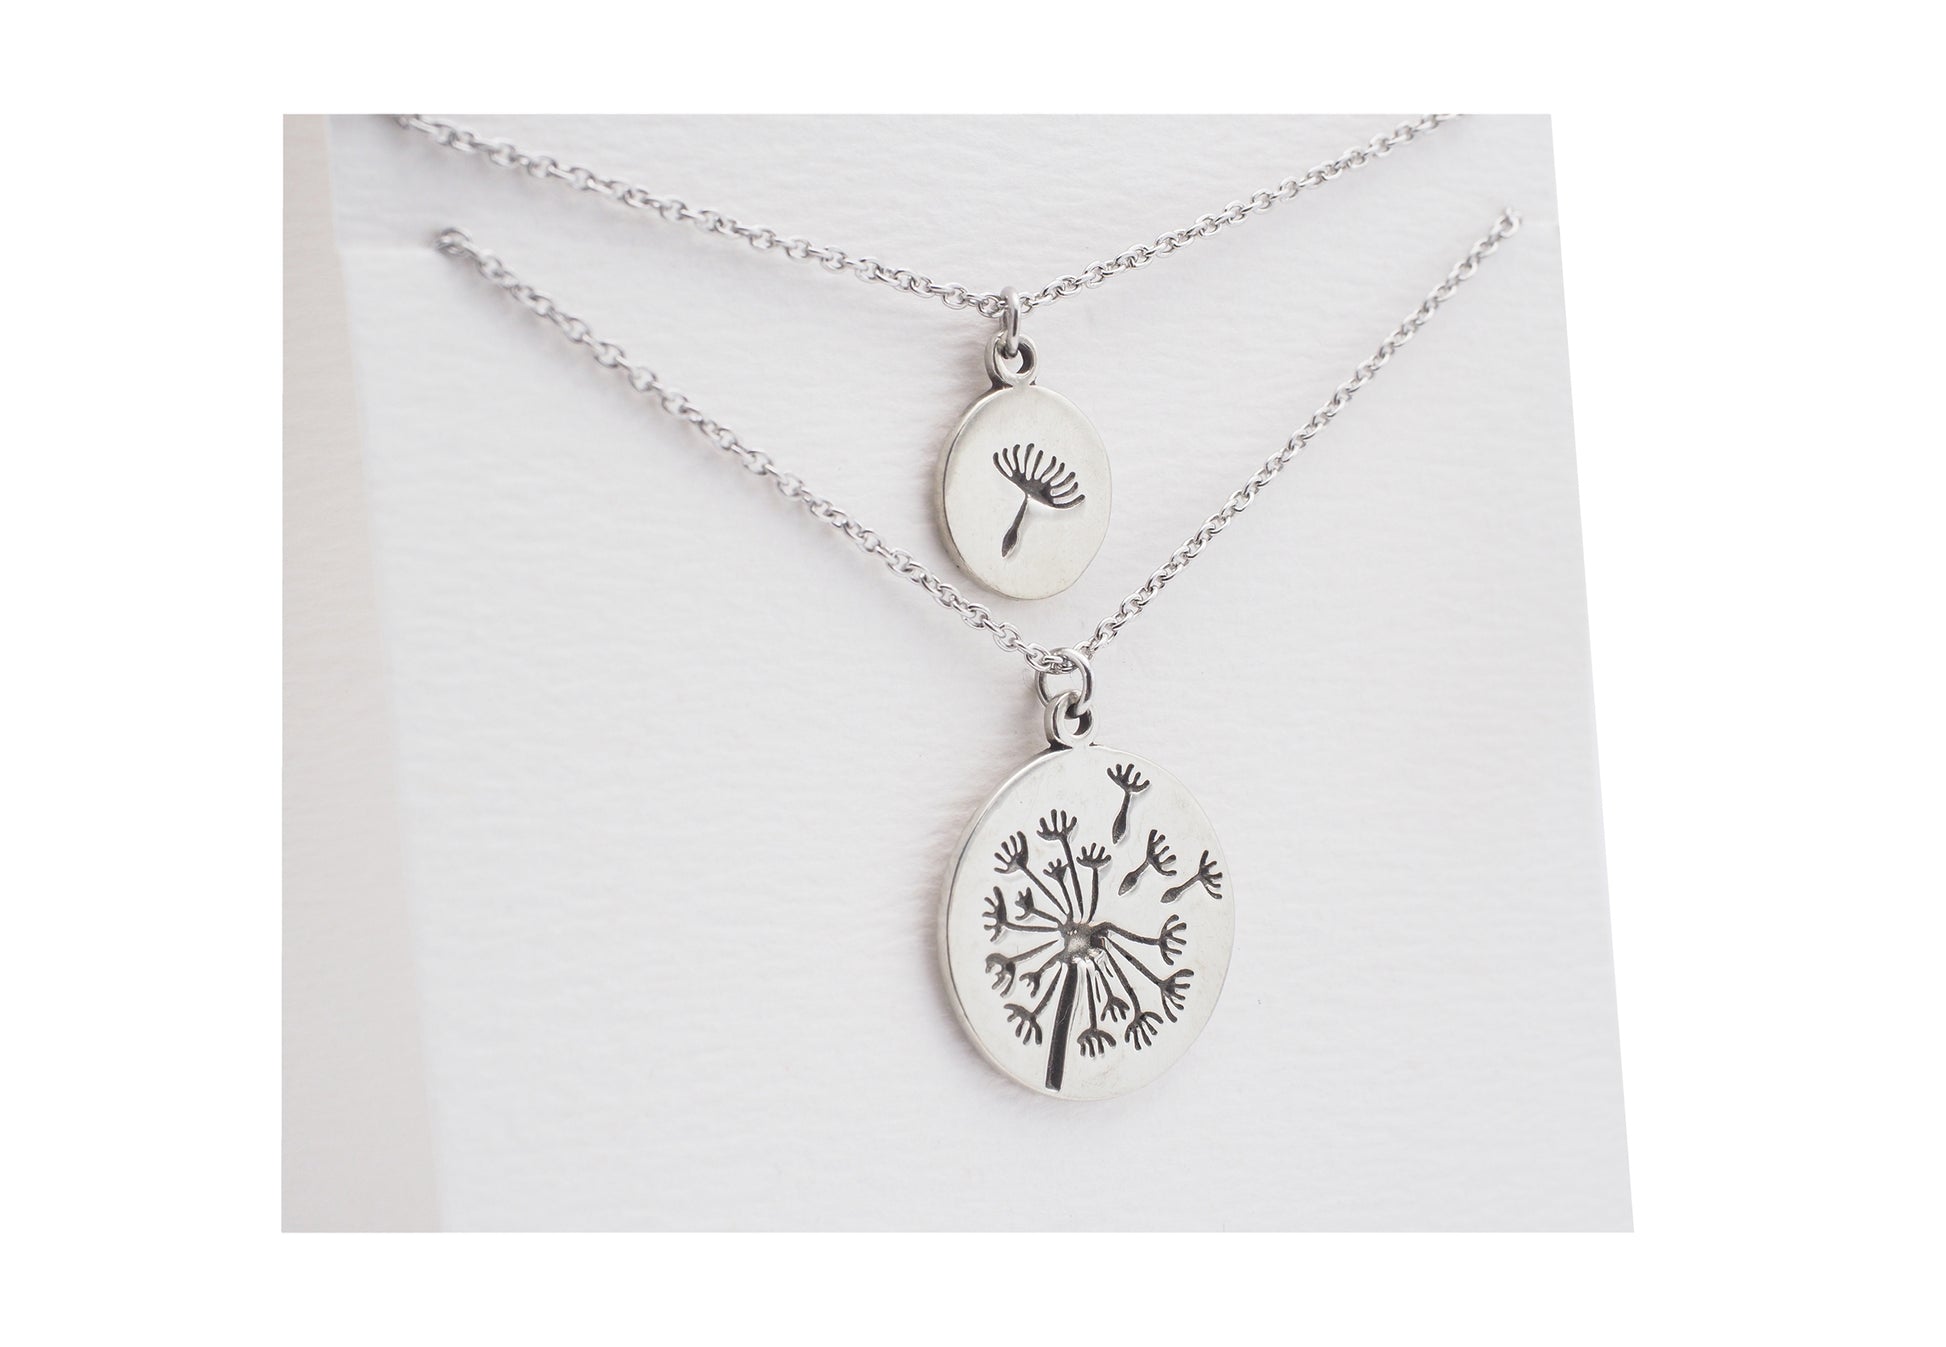 Quinnlyn - Dandelion - Necklace - Pendant